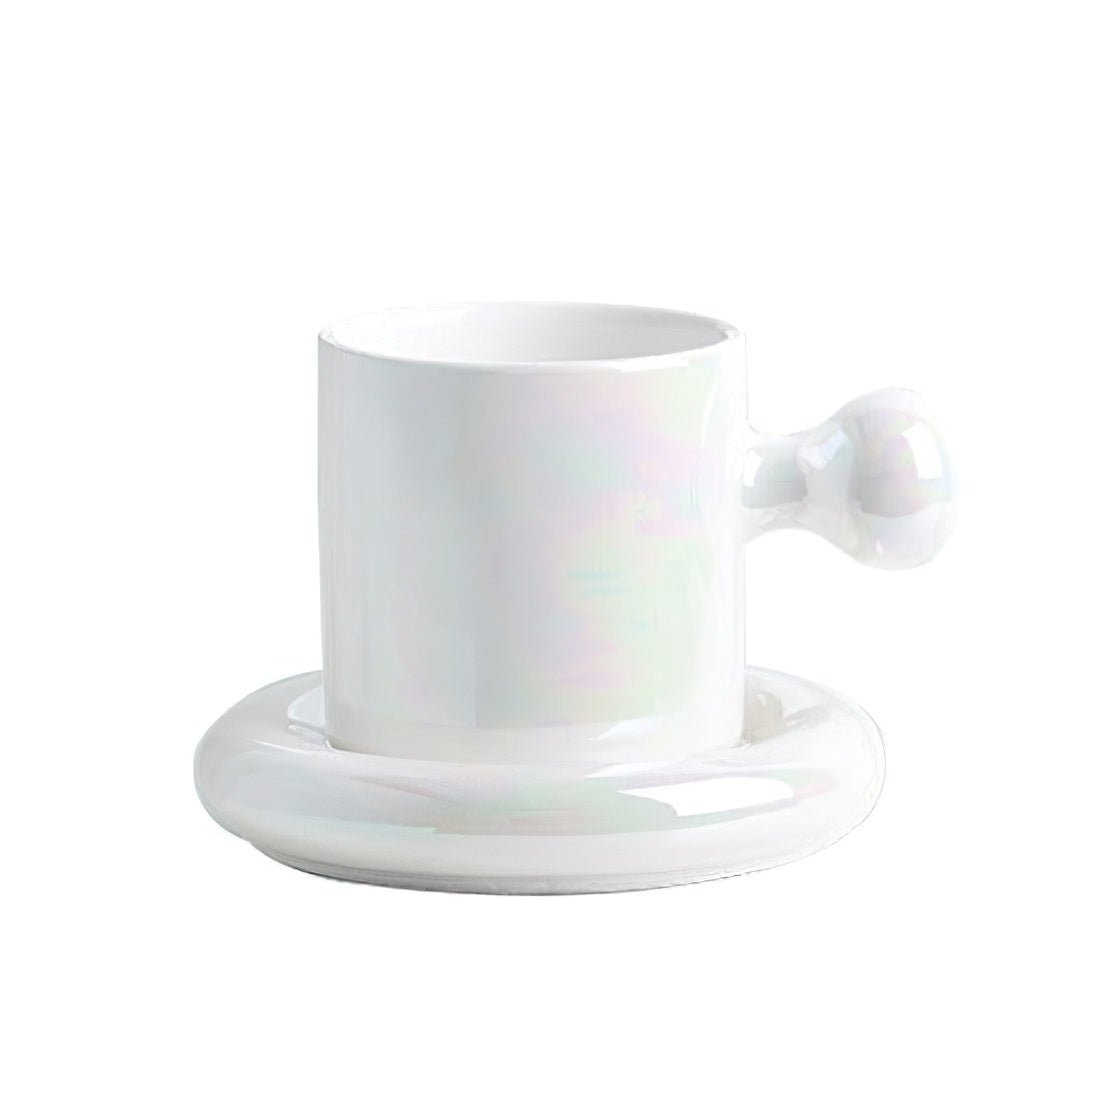 White Shrek Ear Mug, ceramic knob handle mug with saucer.